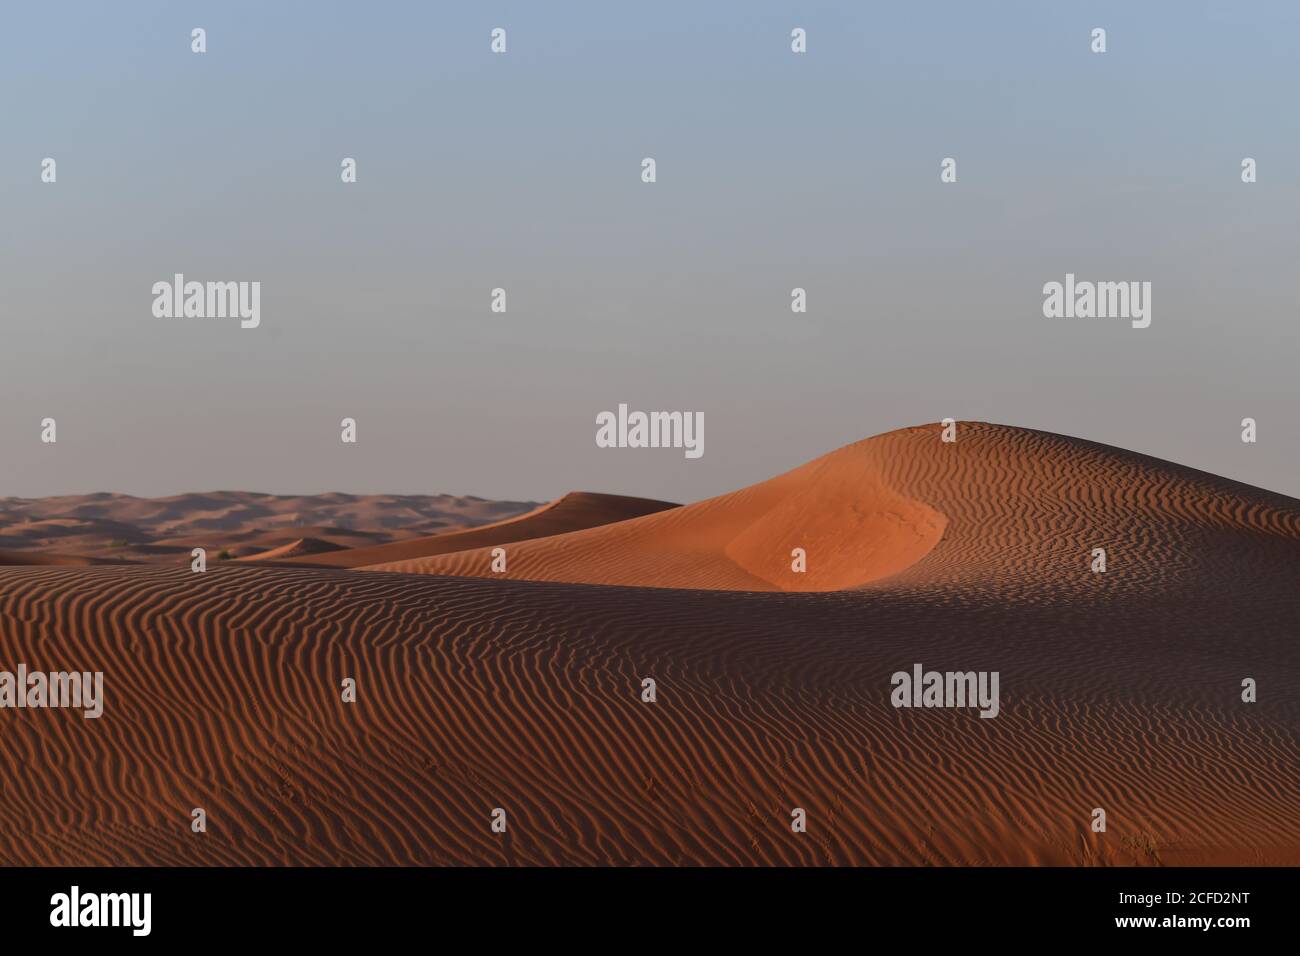 Ambiente del desierto árabe fotografías e imágenes de alta resolución -  Alamy